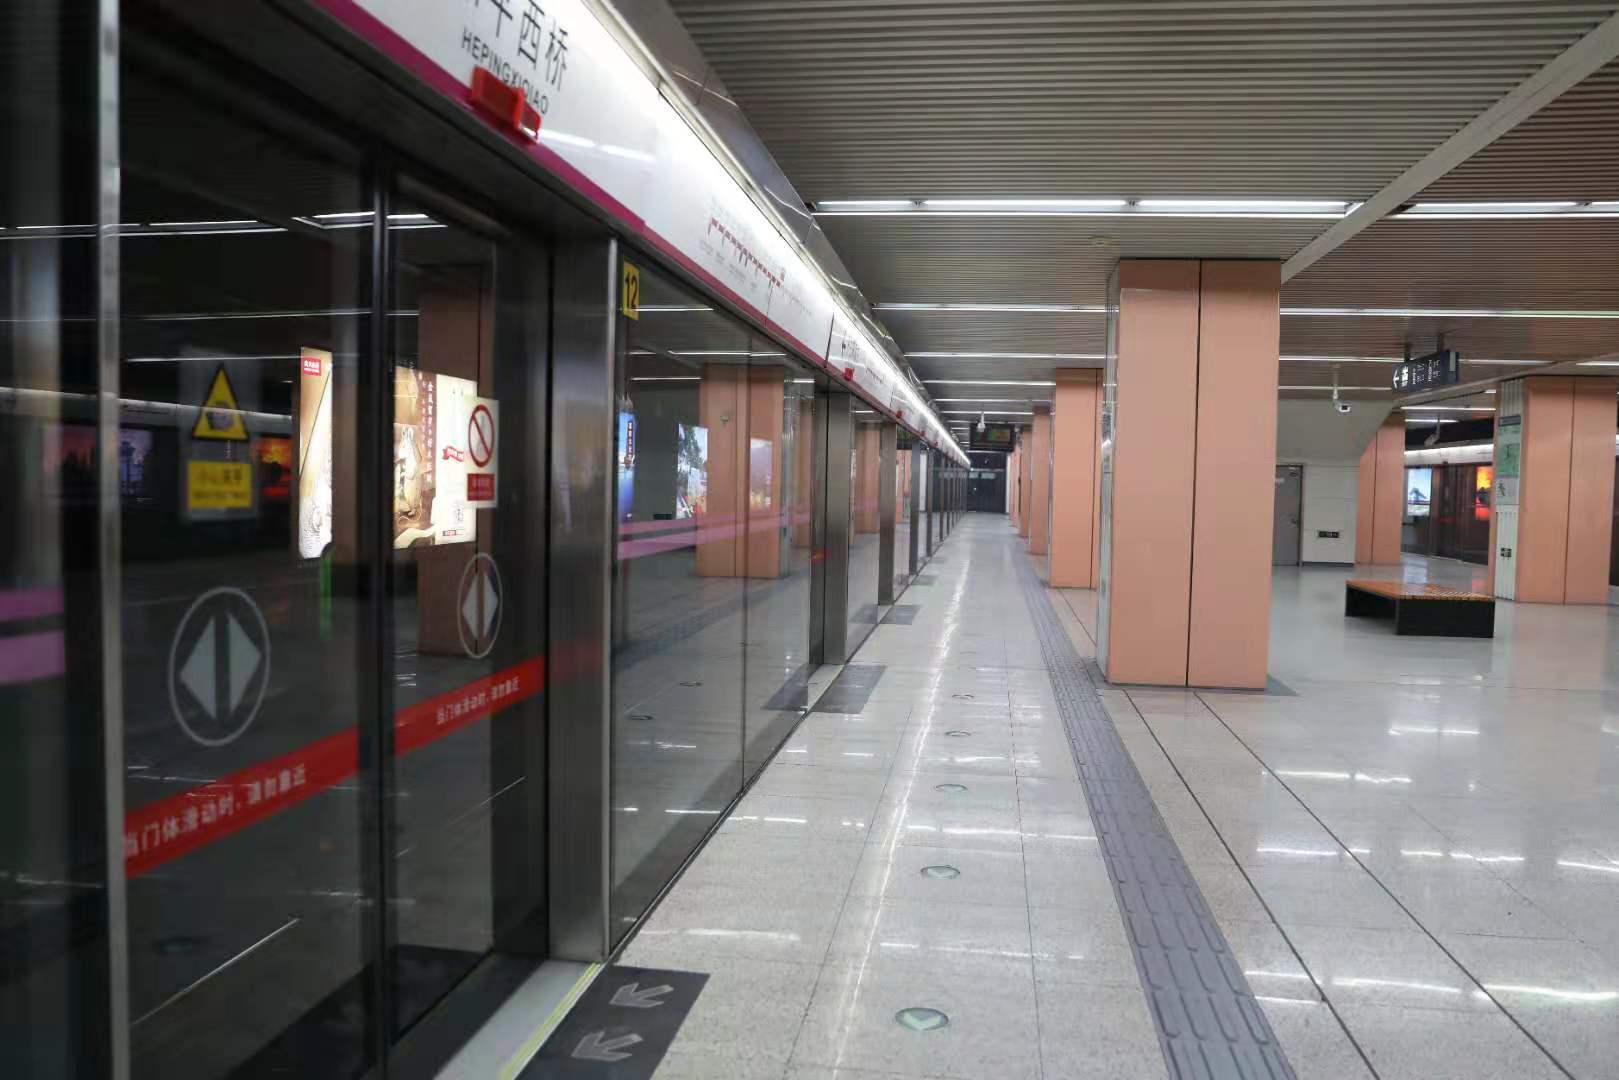 北京地铁5号线早高峰图片